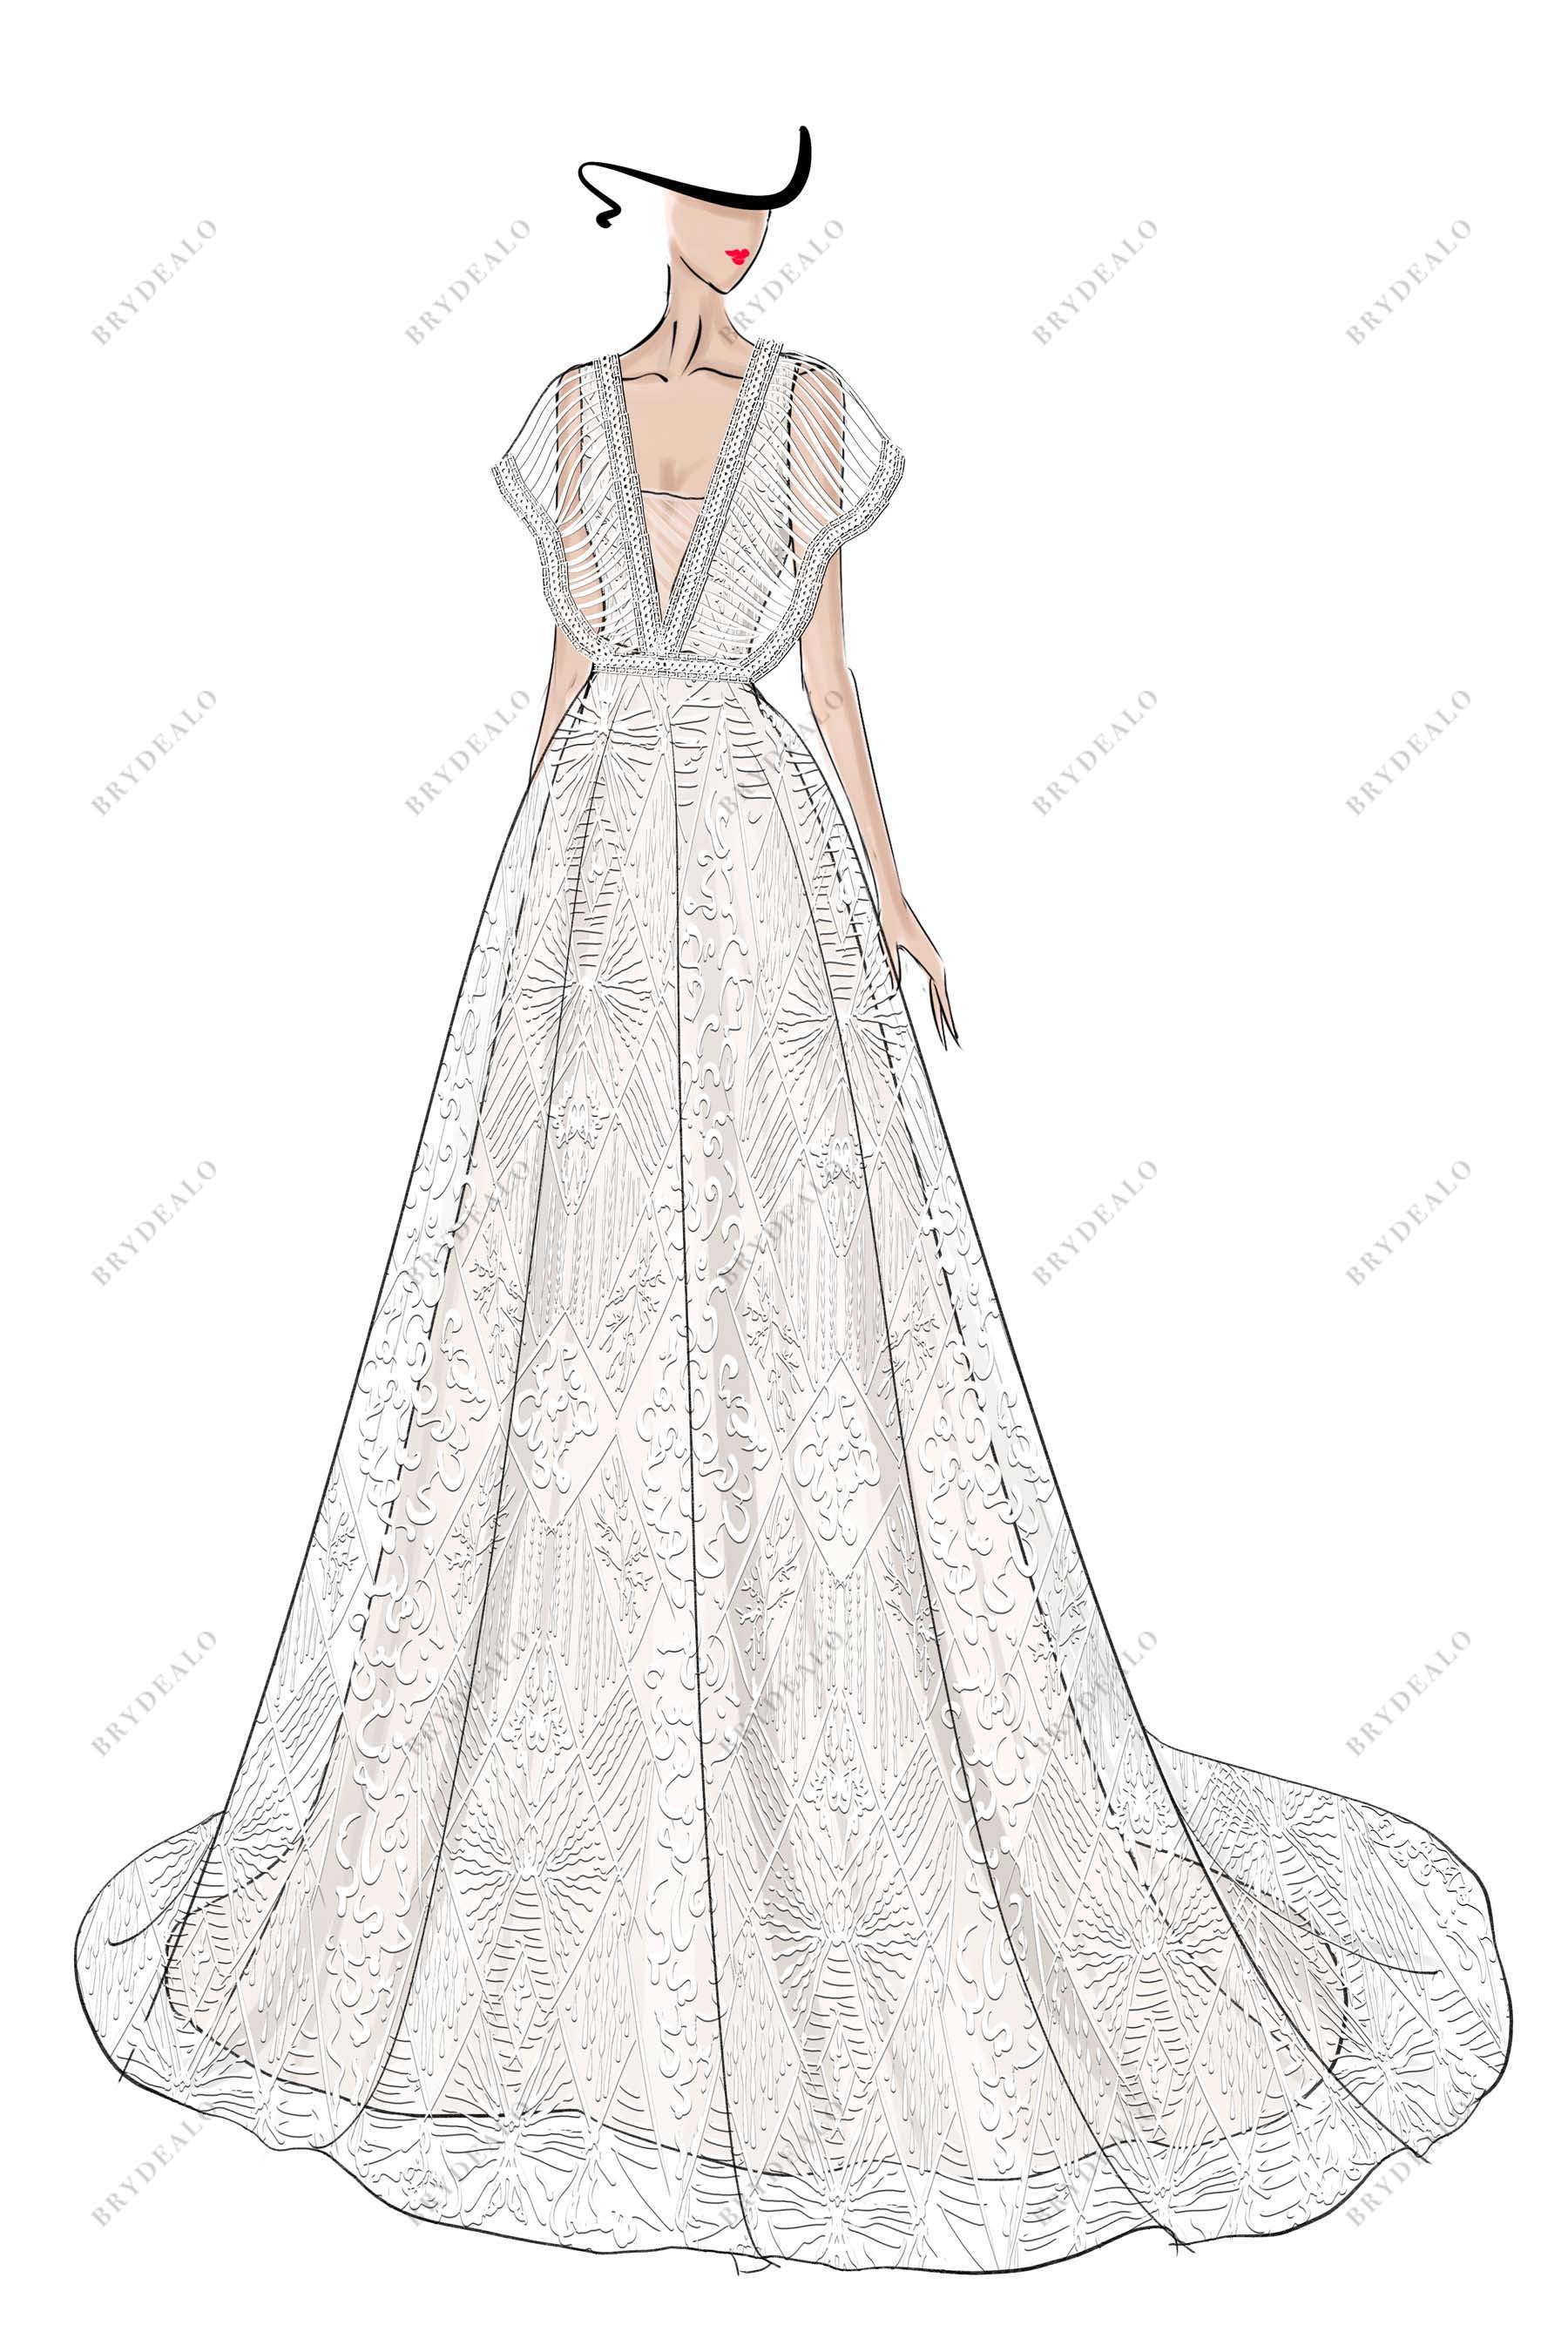 Designer Plunging V-neck Boho Lace Wedding Dress Sketch